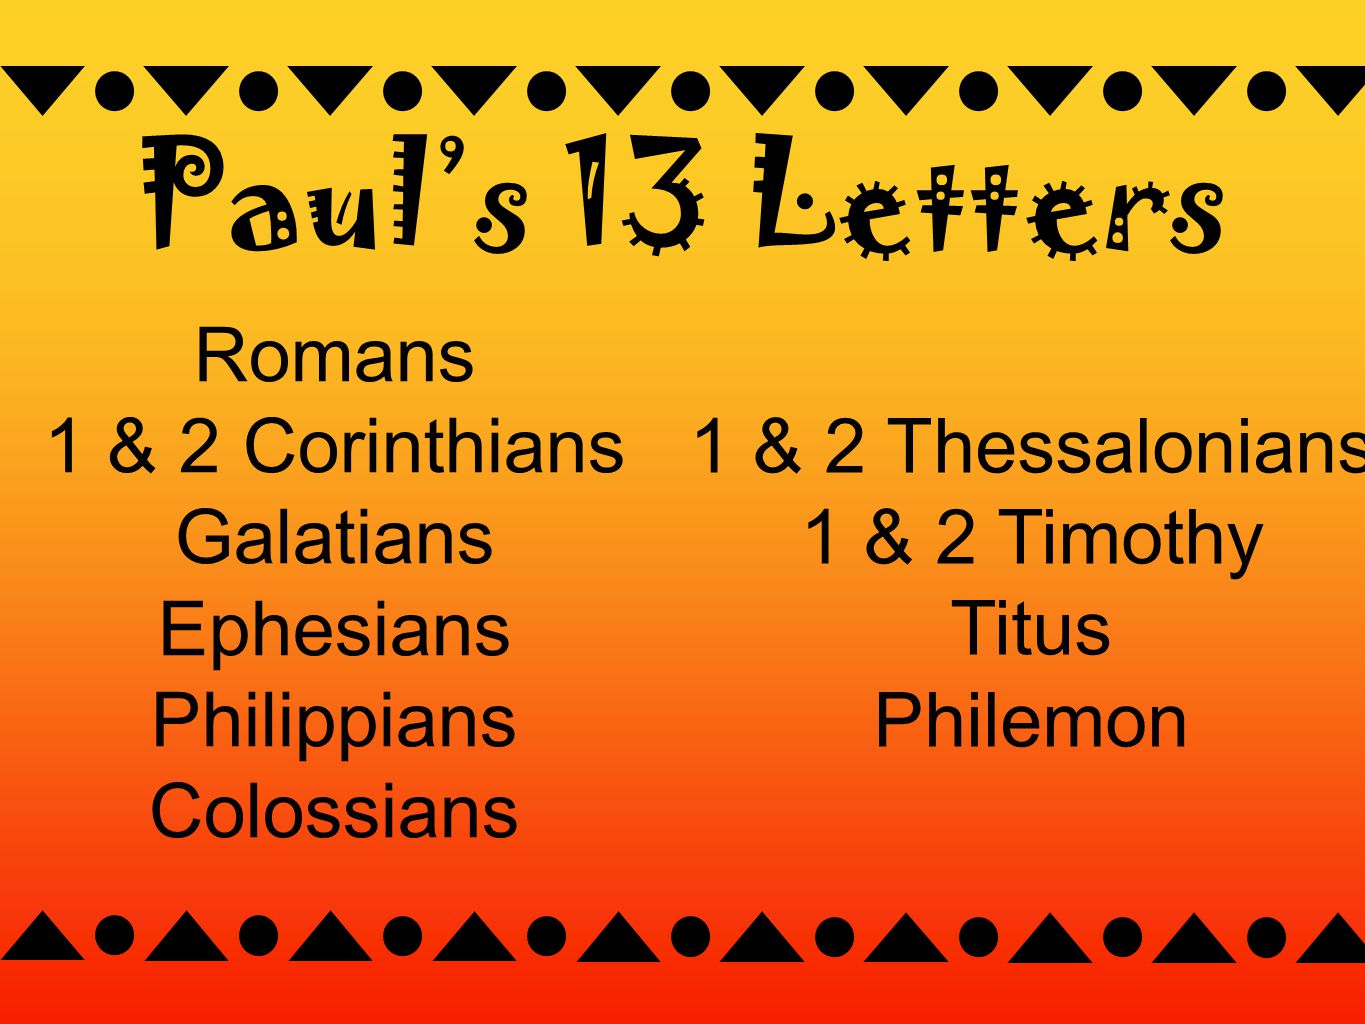 Romans 1 & 2 Corinthians Galatians Ephesians Philippians Colossians Paul’s 13 Letters 1 & 2 Thessalonians 1 & 2 Timothy Titus Philemon